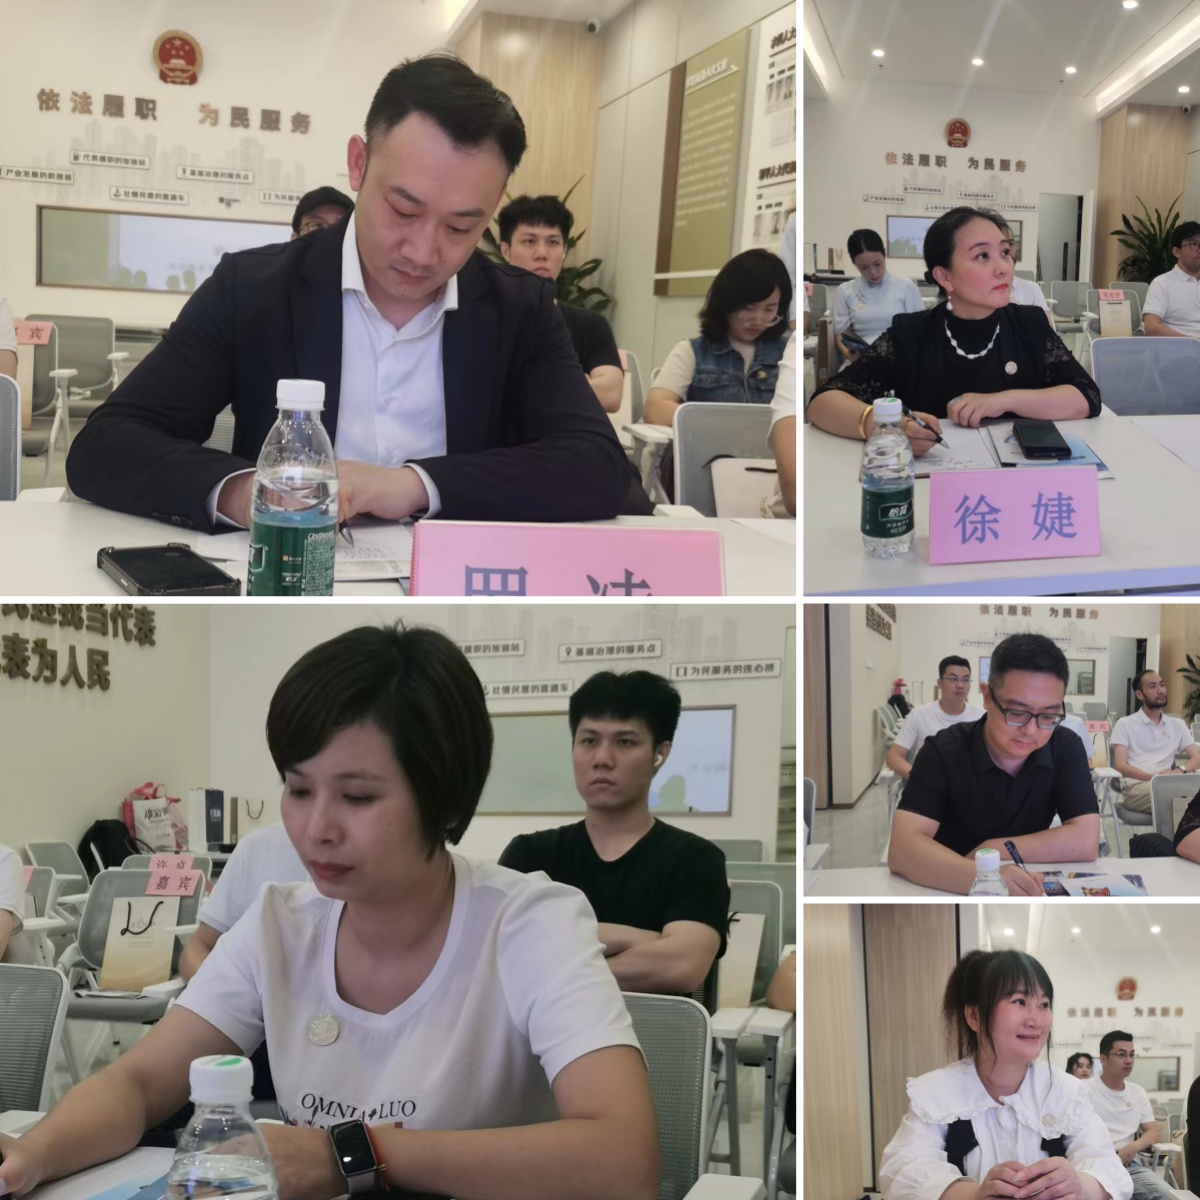 原创力量引领珠宝行业高质量发展 深圳市版权协会珠宝专业委员会正式成立